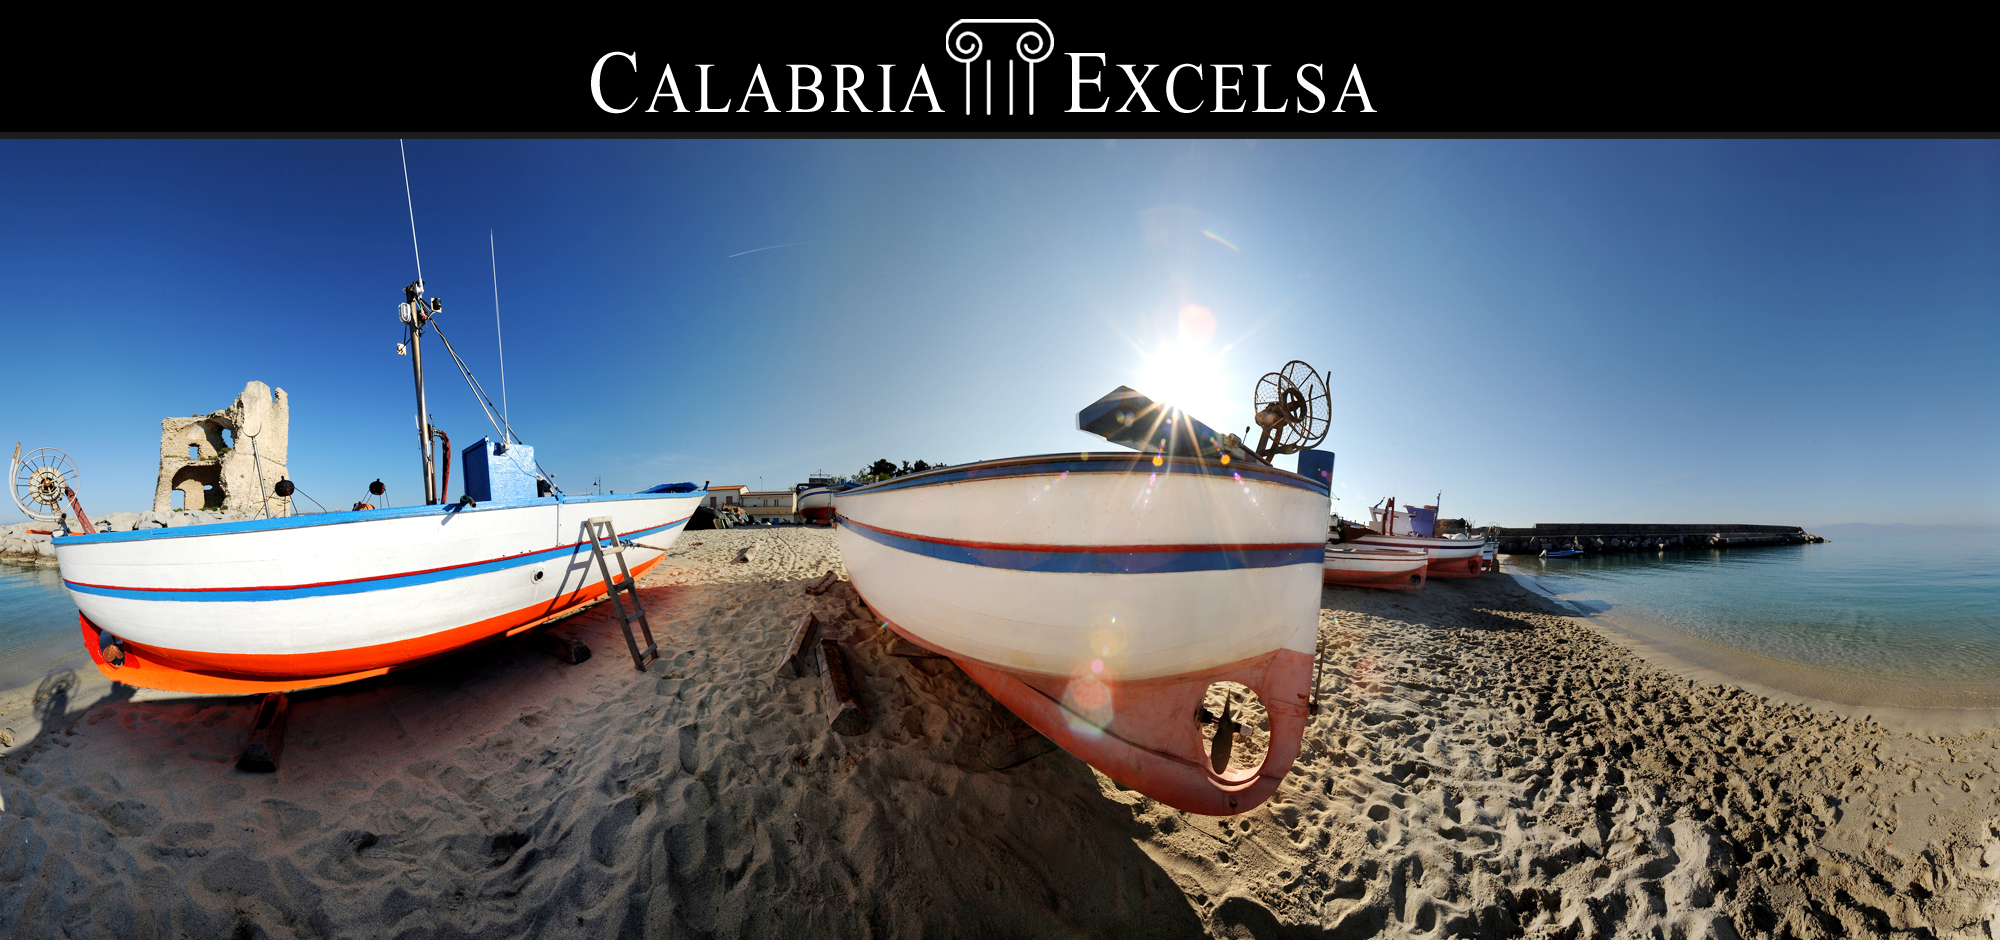 Calabria Excelsa 8